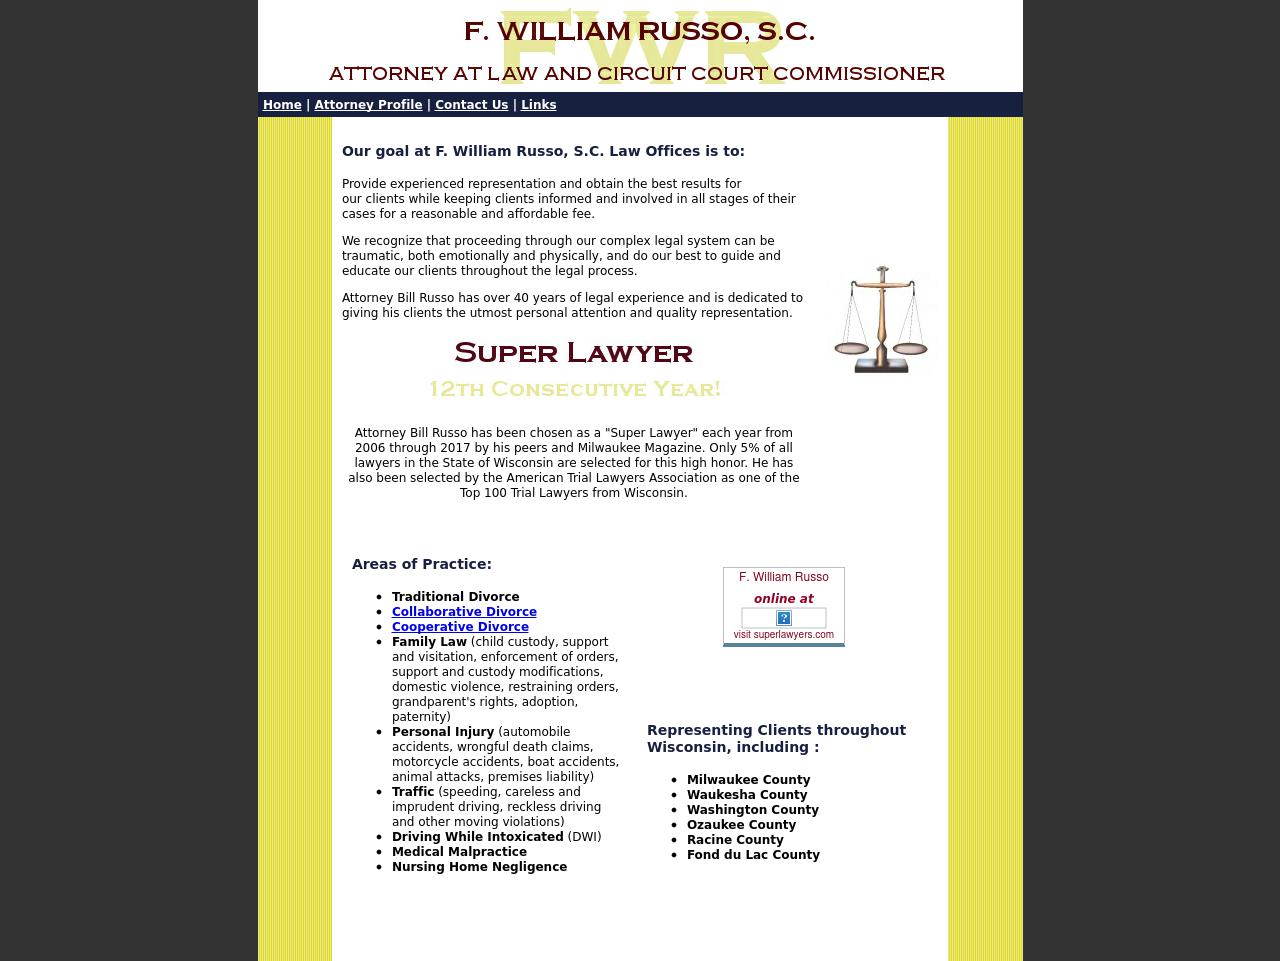 Russo, F William - Milwaukee WI Lawyers